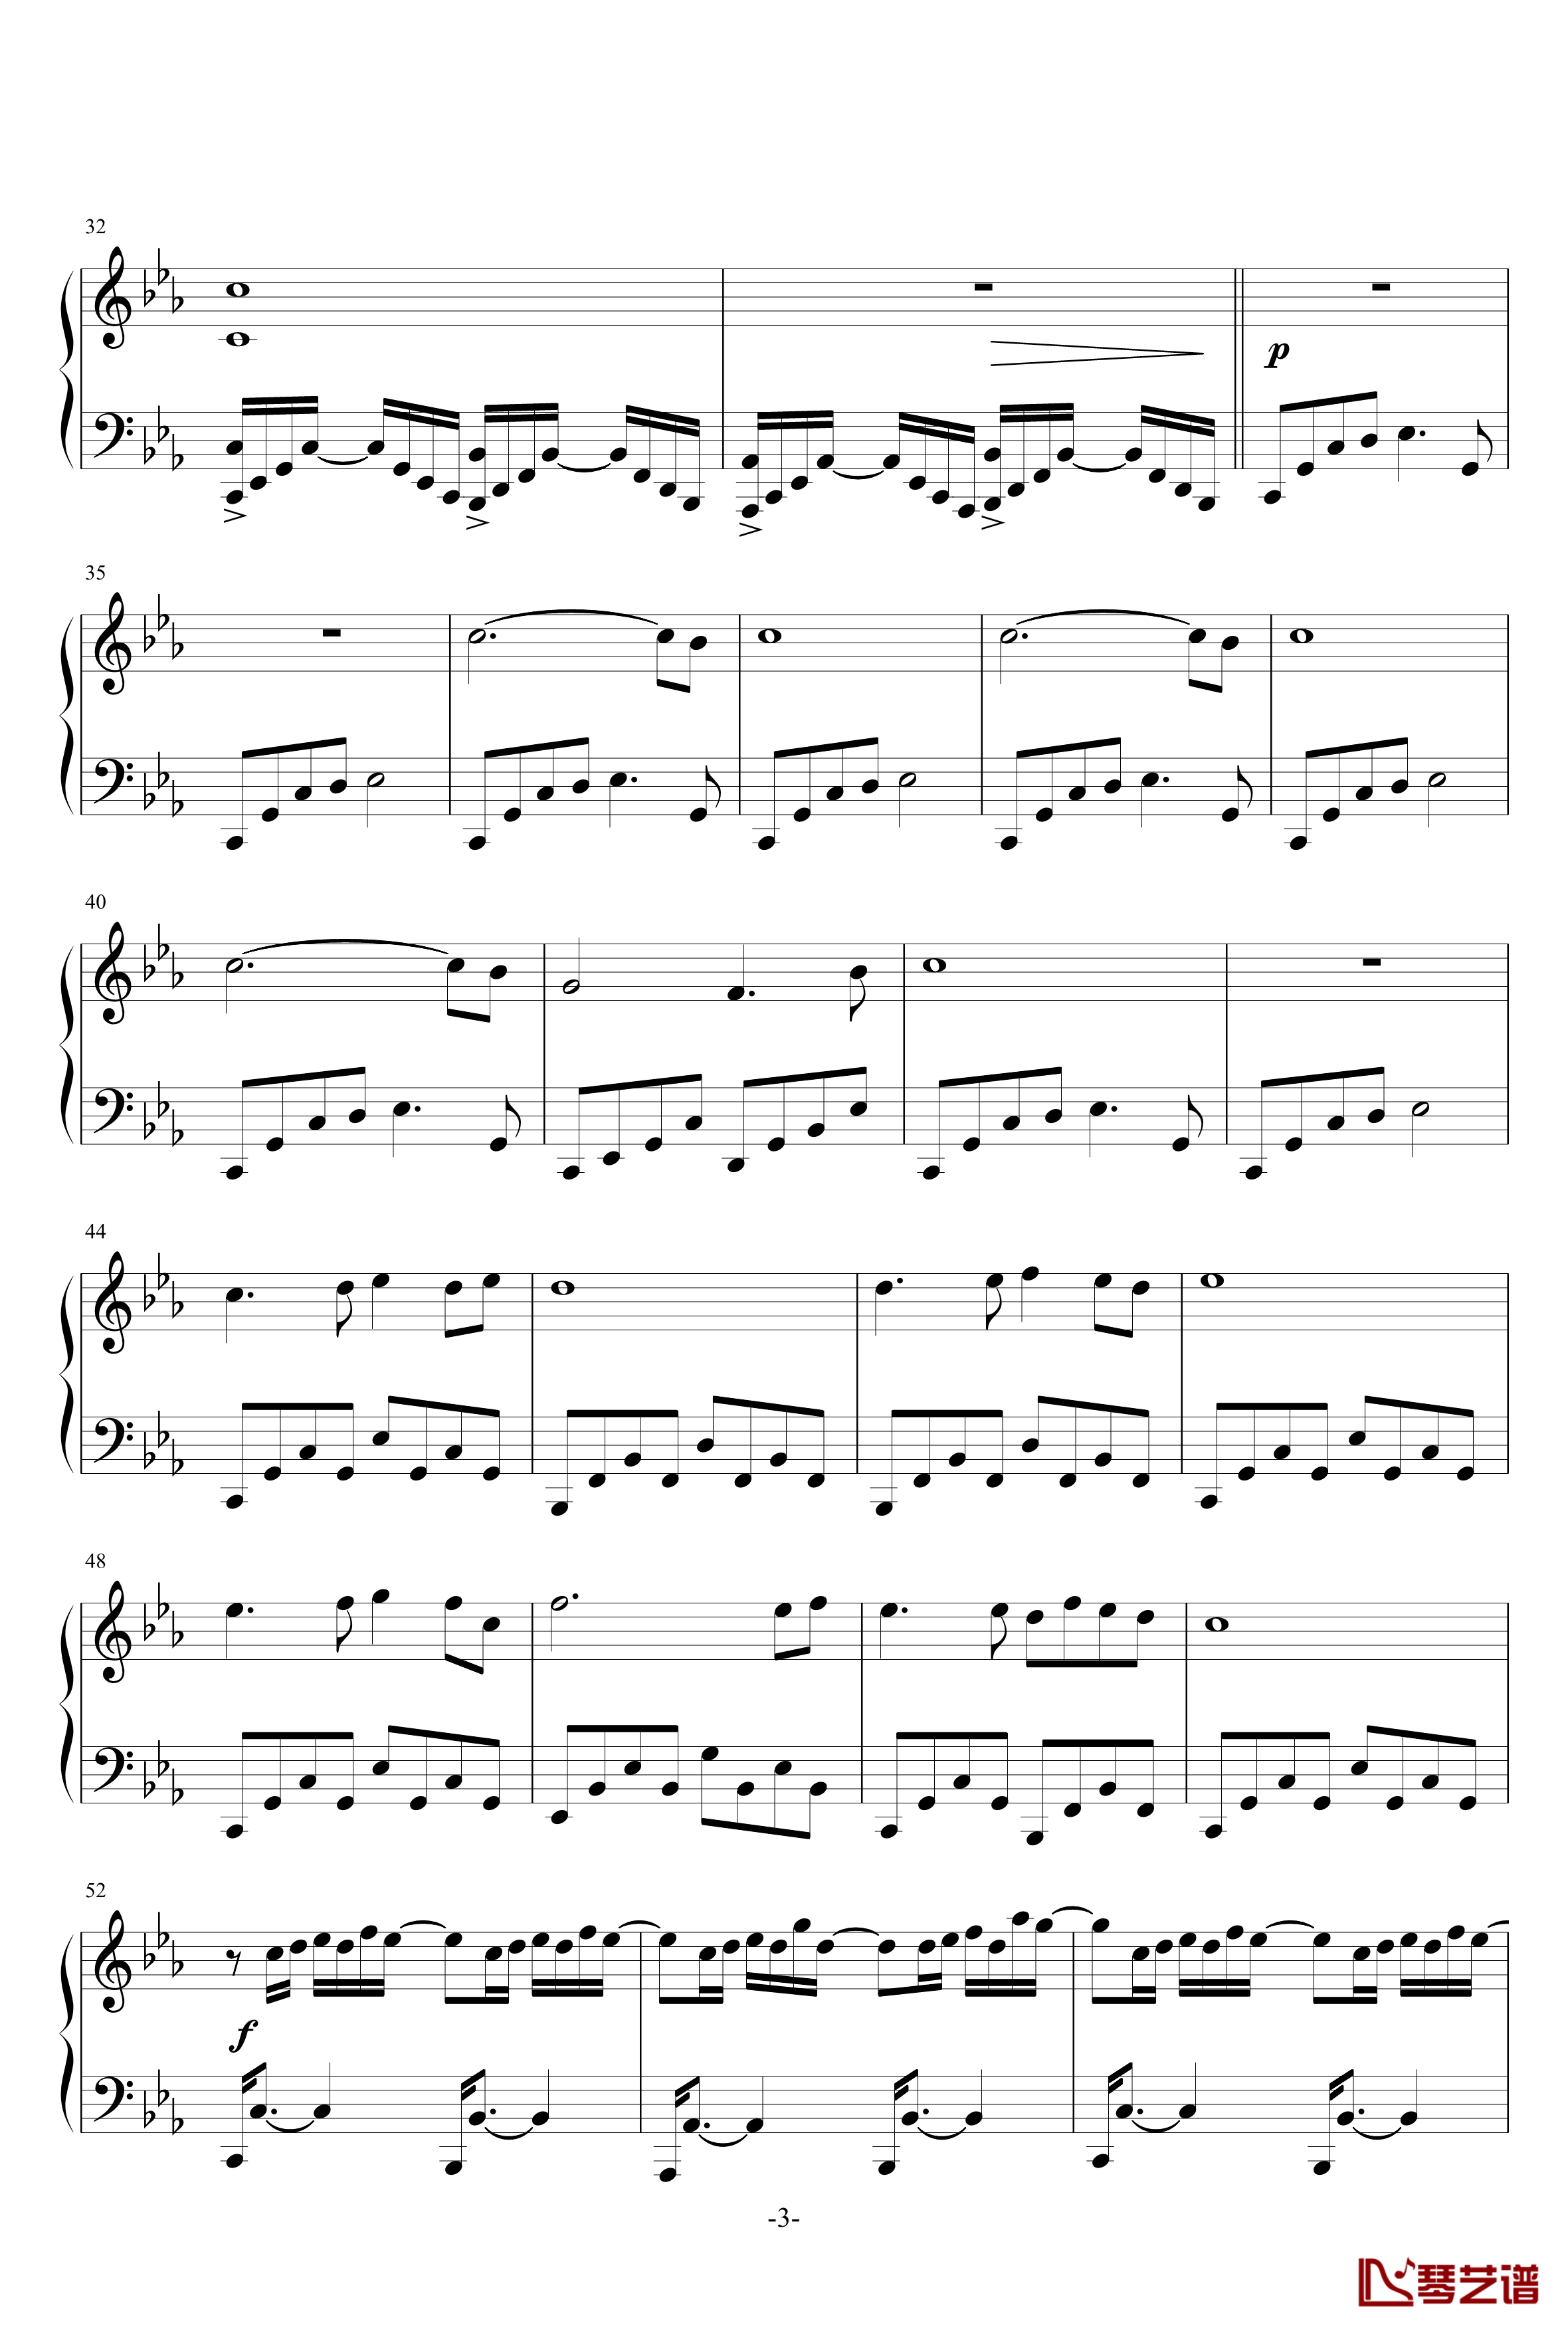 国殇钢琴谱-完整版-黑白灰丶3